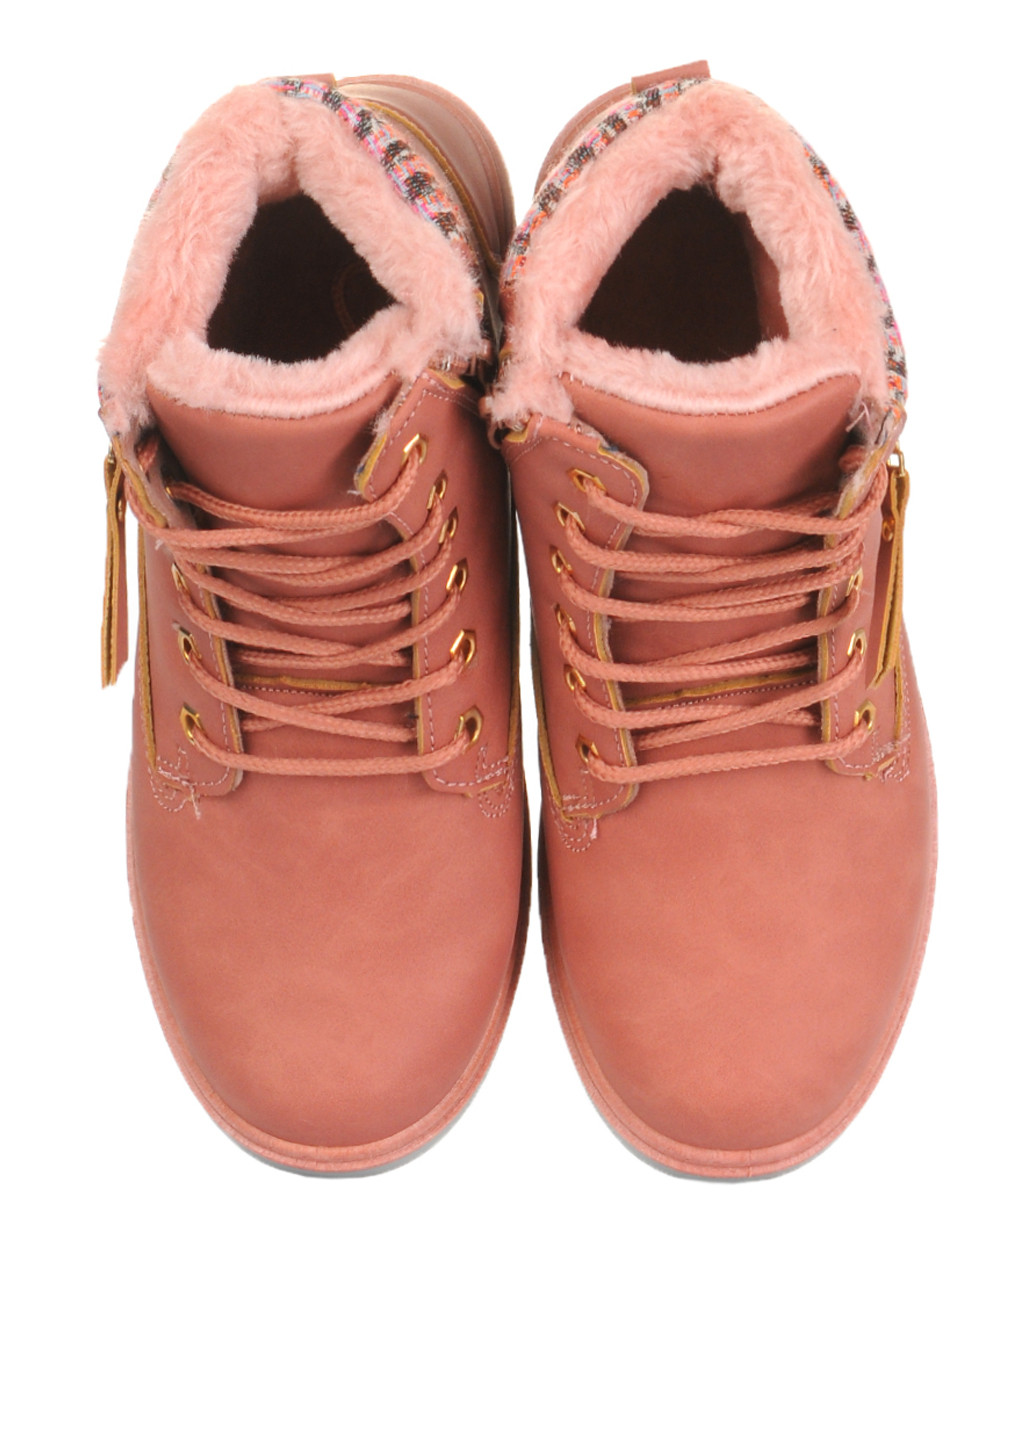 Зимние ботинки Goldstar со шнуровкой, с молнией из искусственной кожи